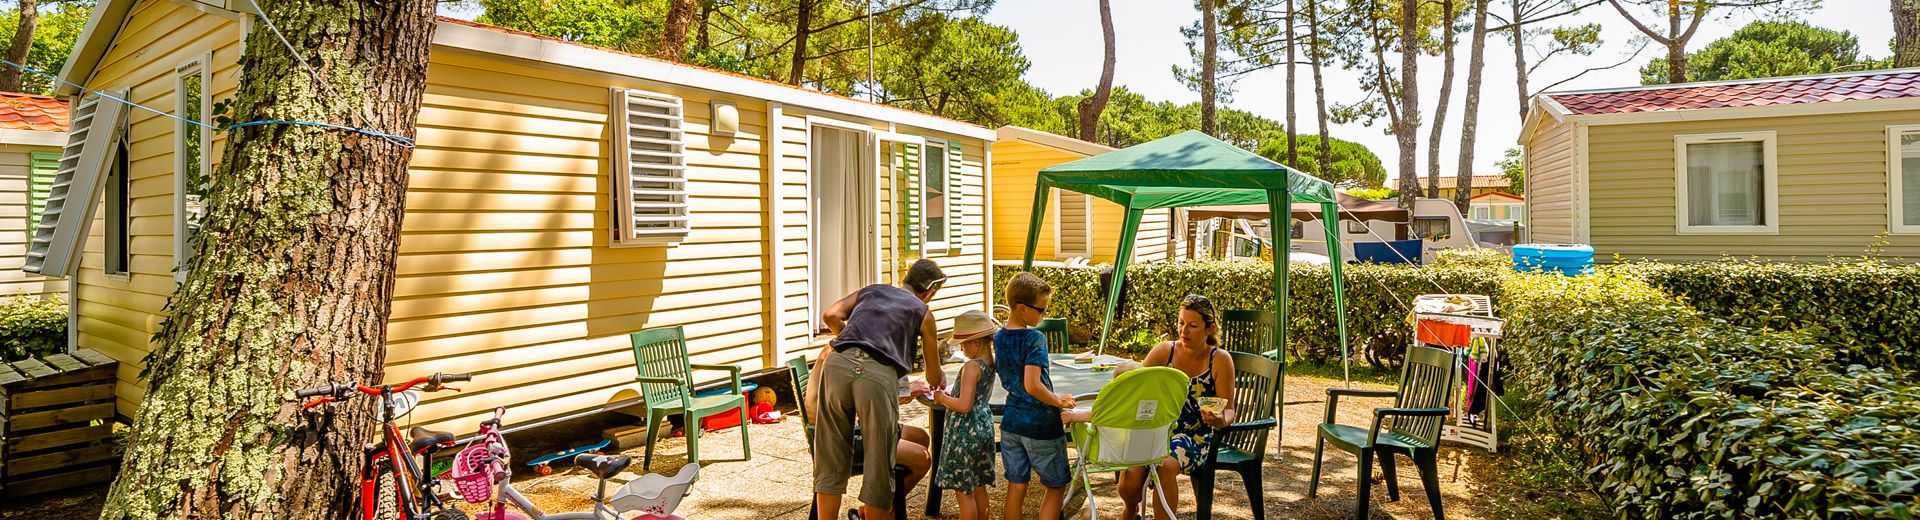 Camping Landes, hebergements mobile home landes